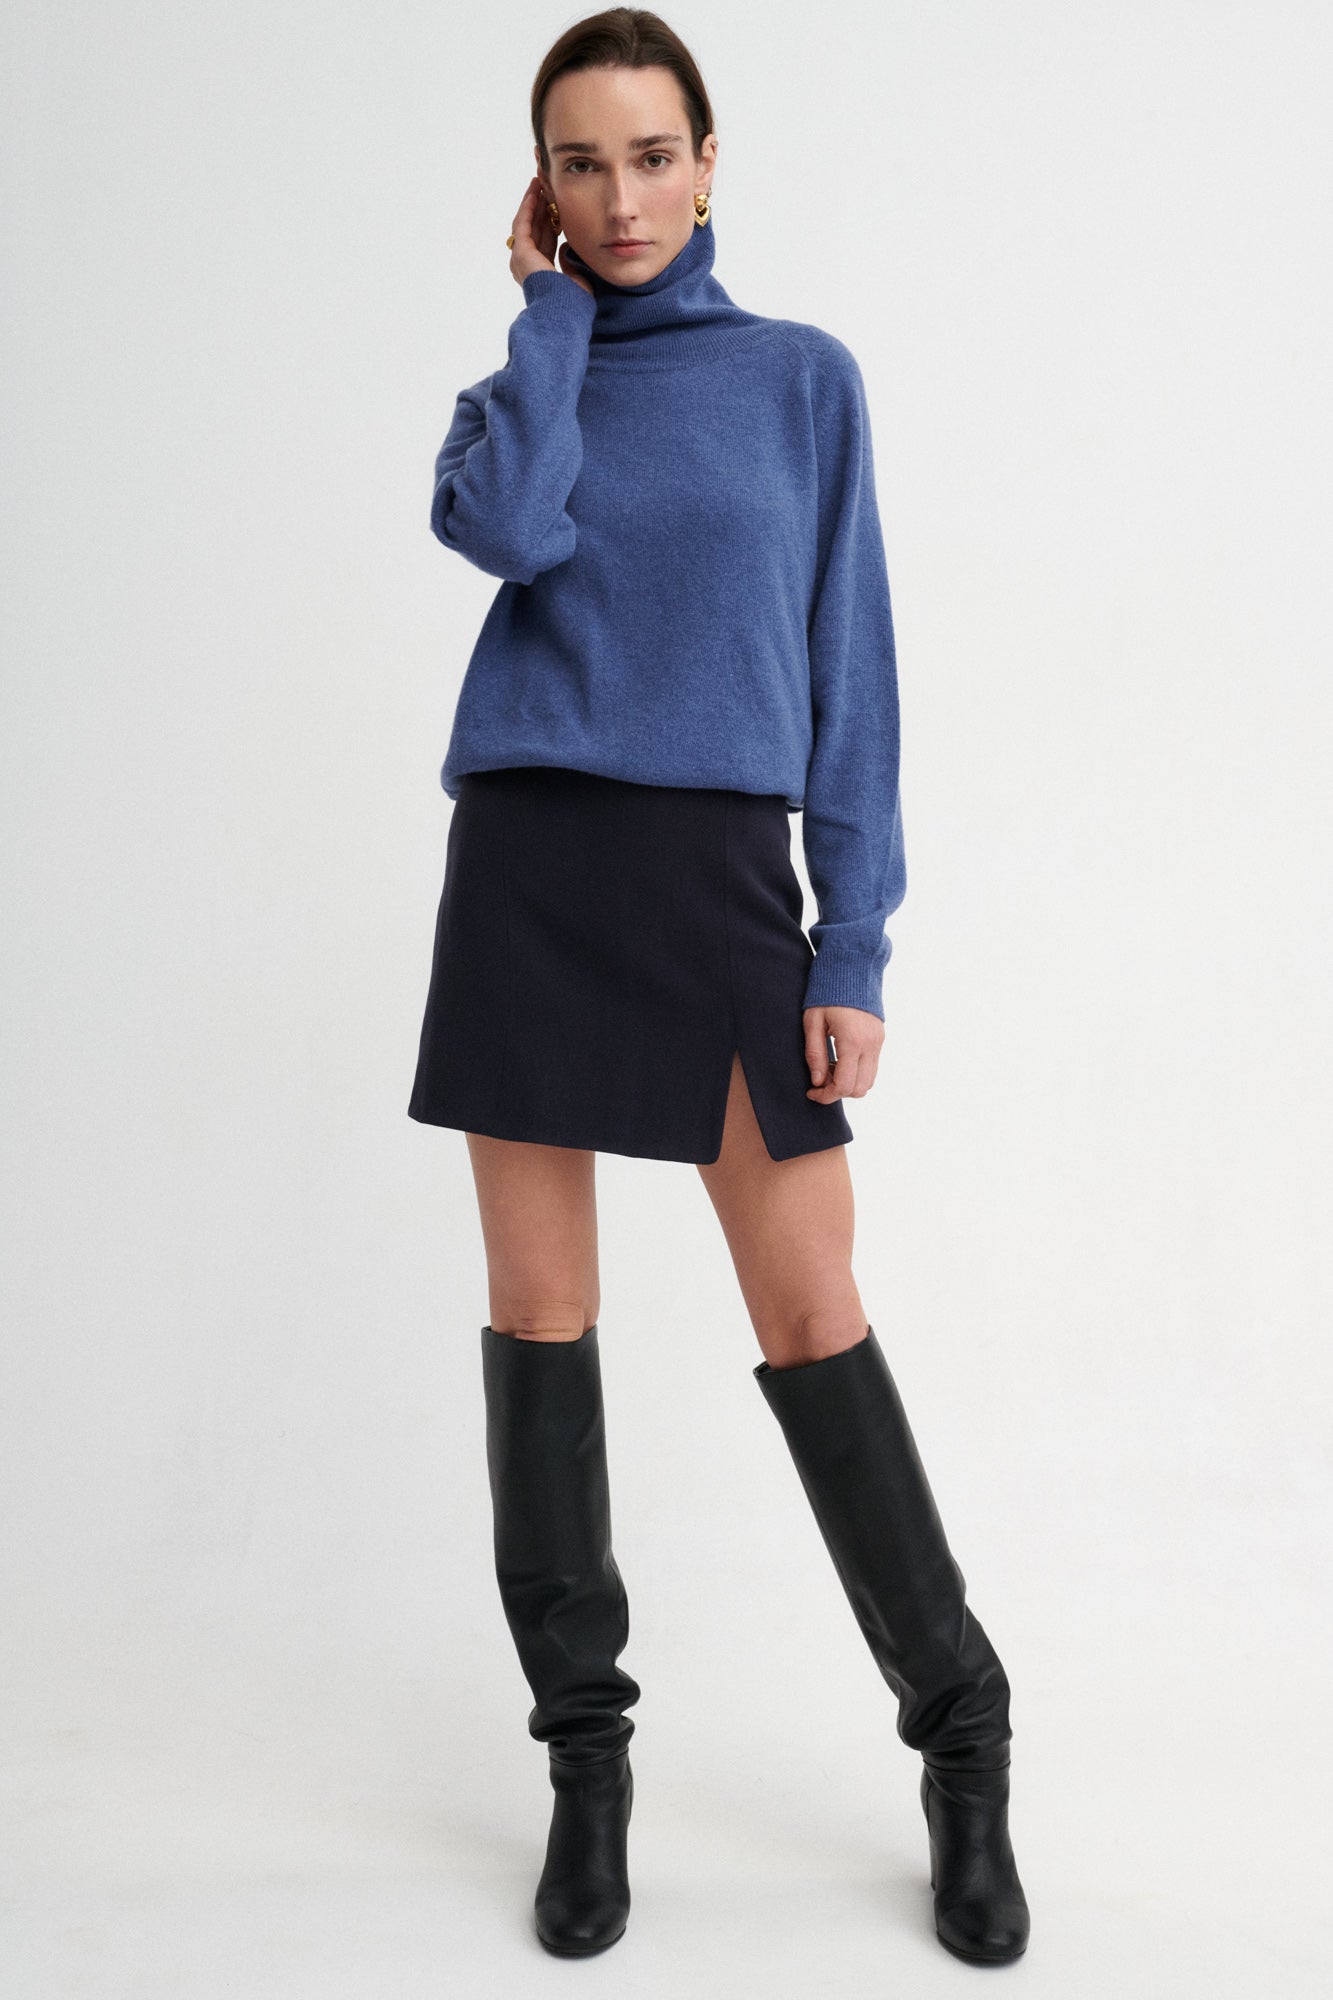 Sweater in merino wool / 16 / 13 / storm blue